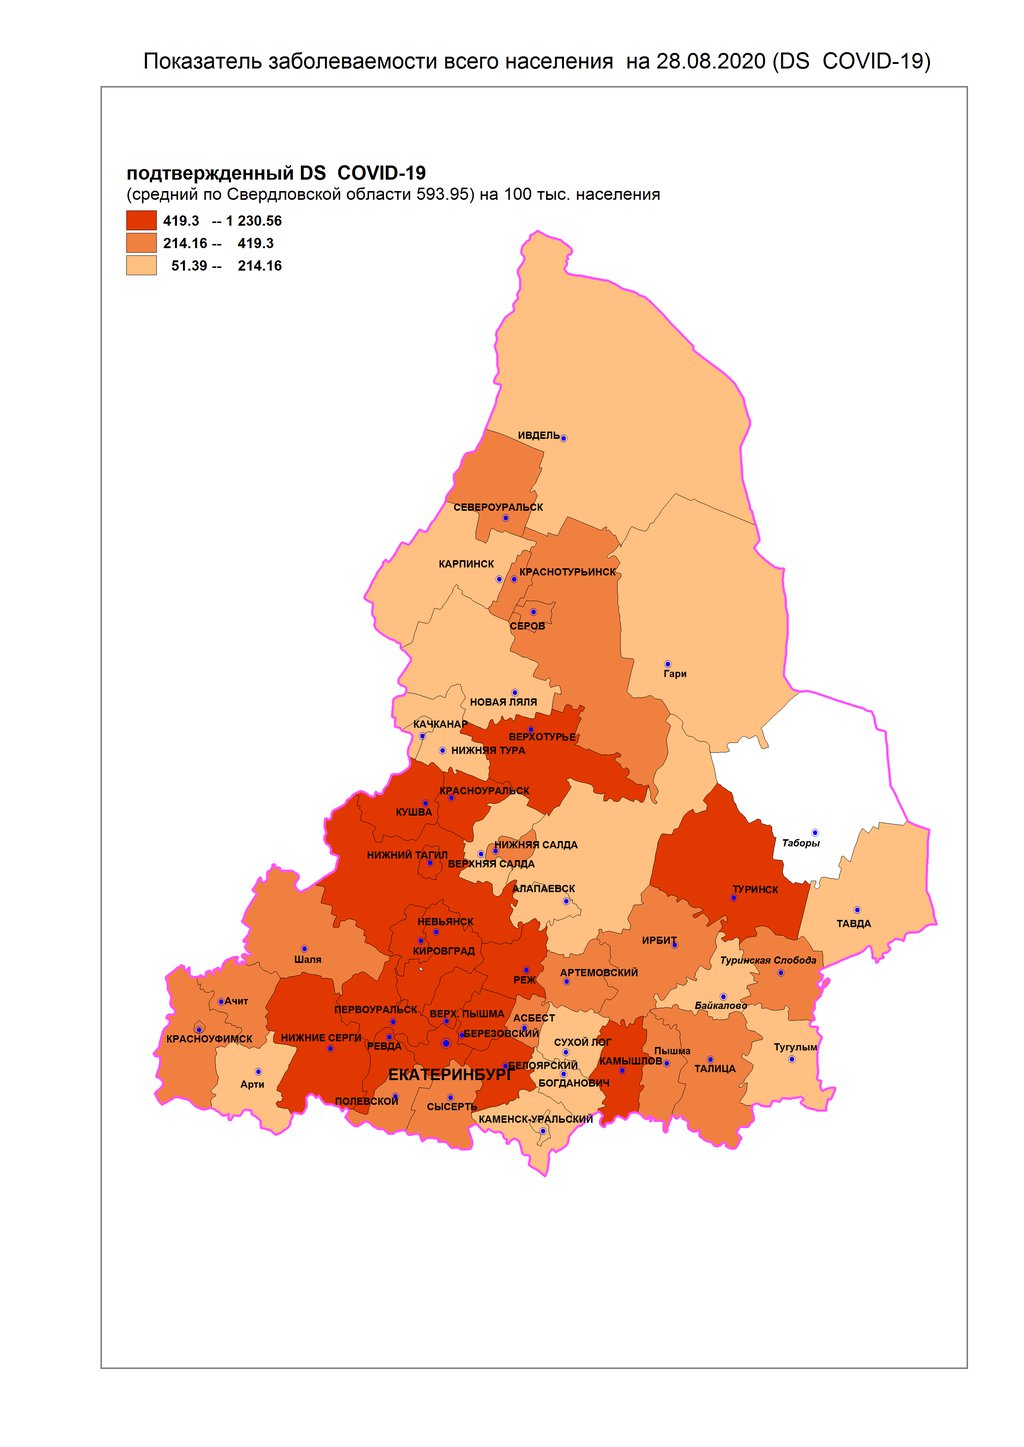 На карте обозначено, в каких городах региона больше всего заболевших, а до какой территории инфекция пока не добралась.